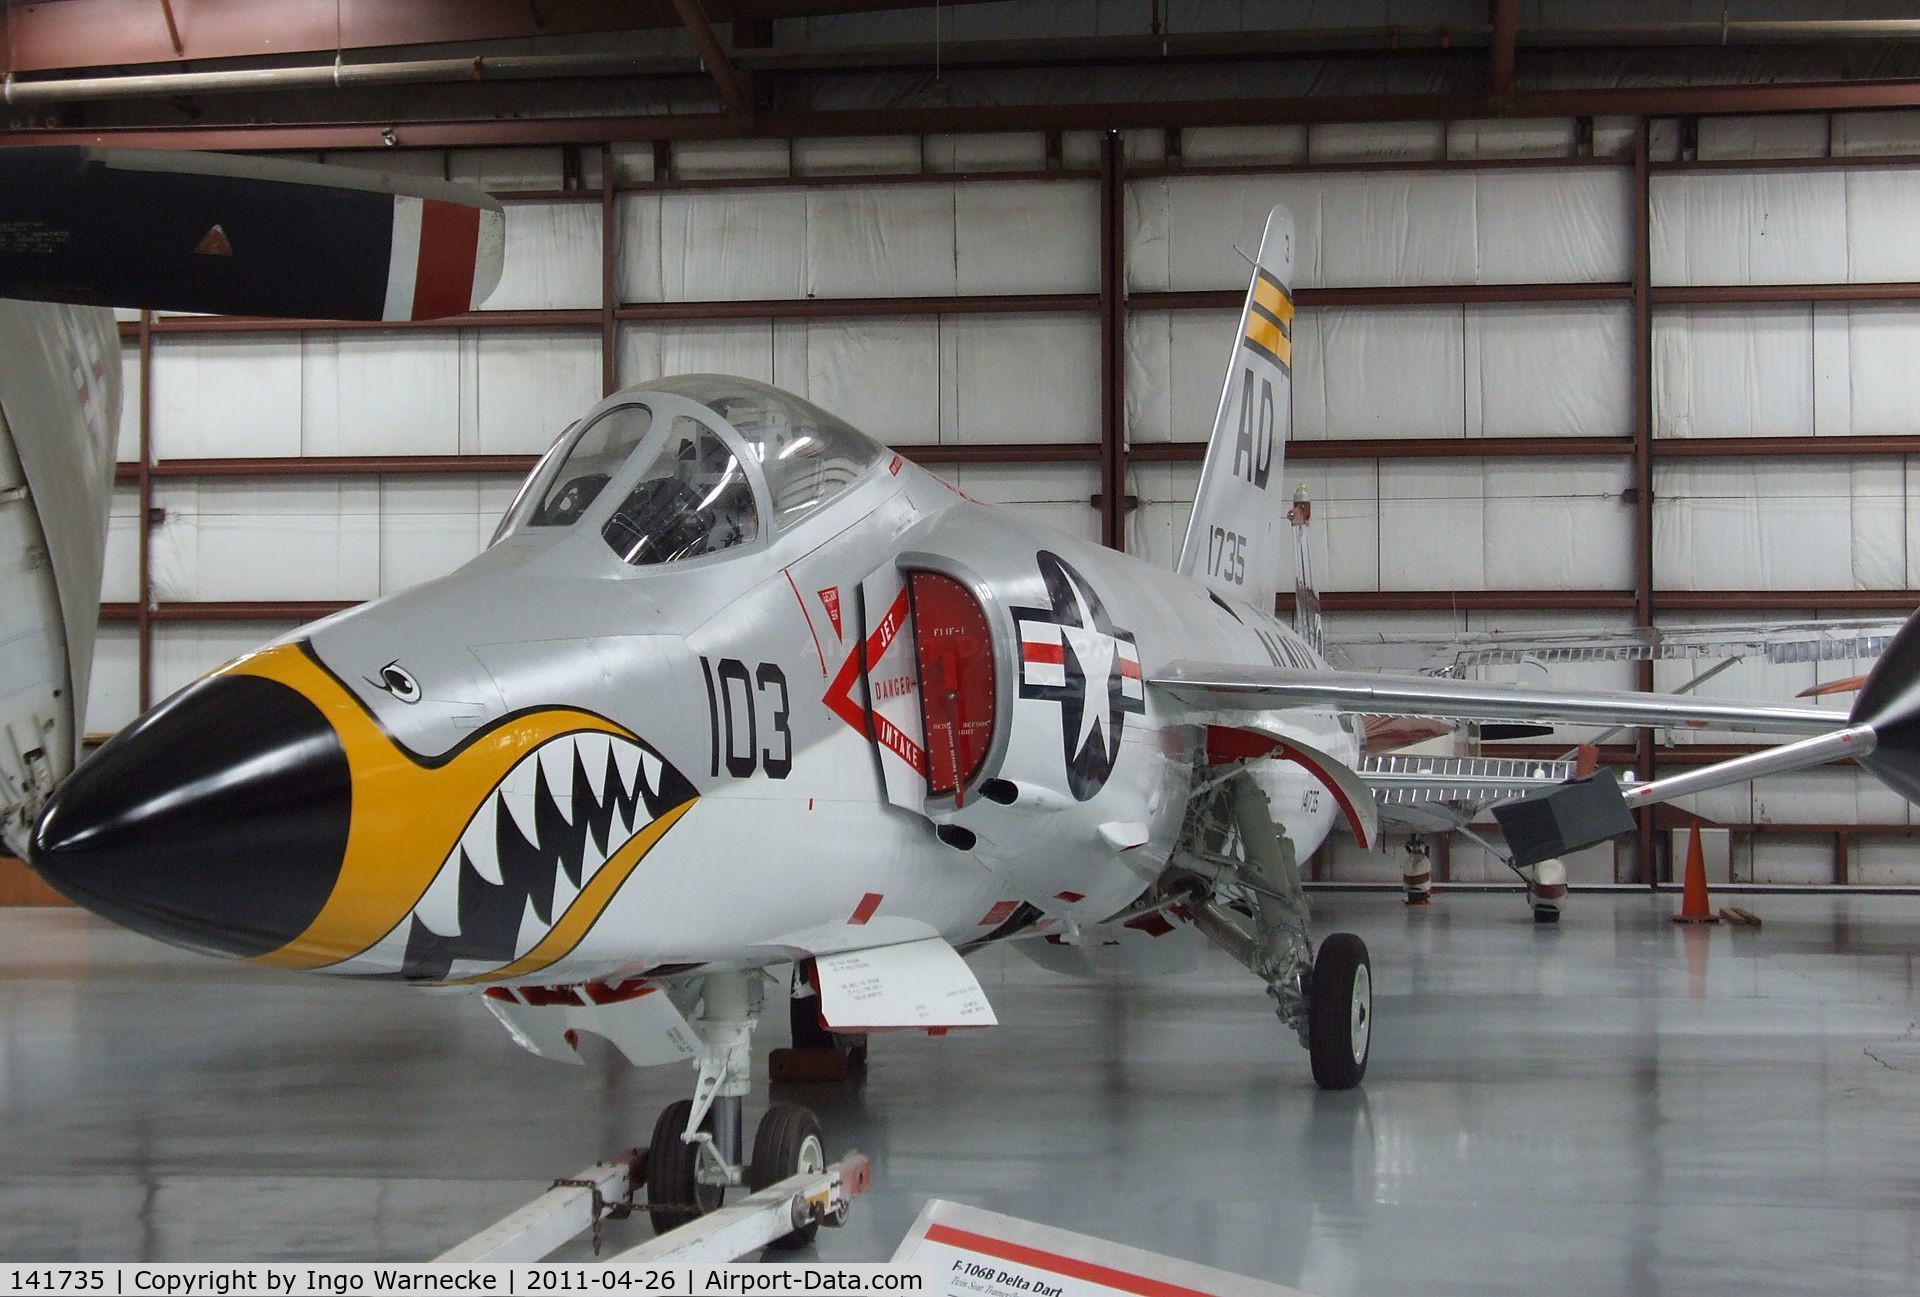 141735, Grumman F11F-1 Tiger C/N 52, Grumman F11F-1 Tiger at the Yanks Air Museum, Chino CA